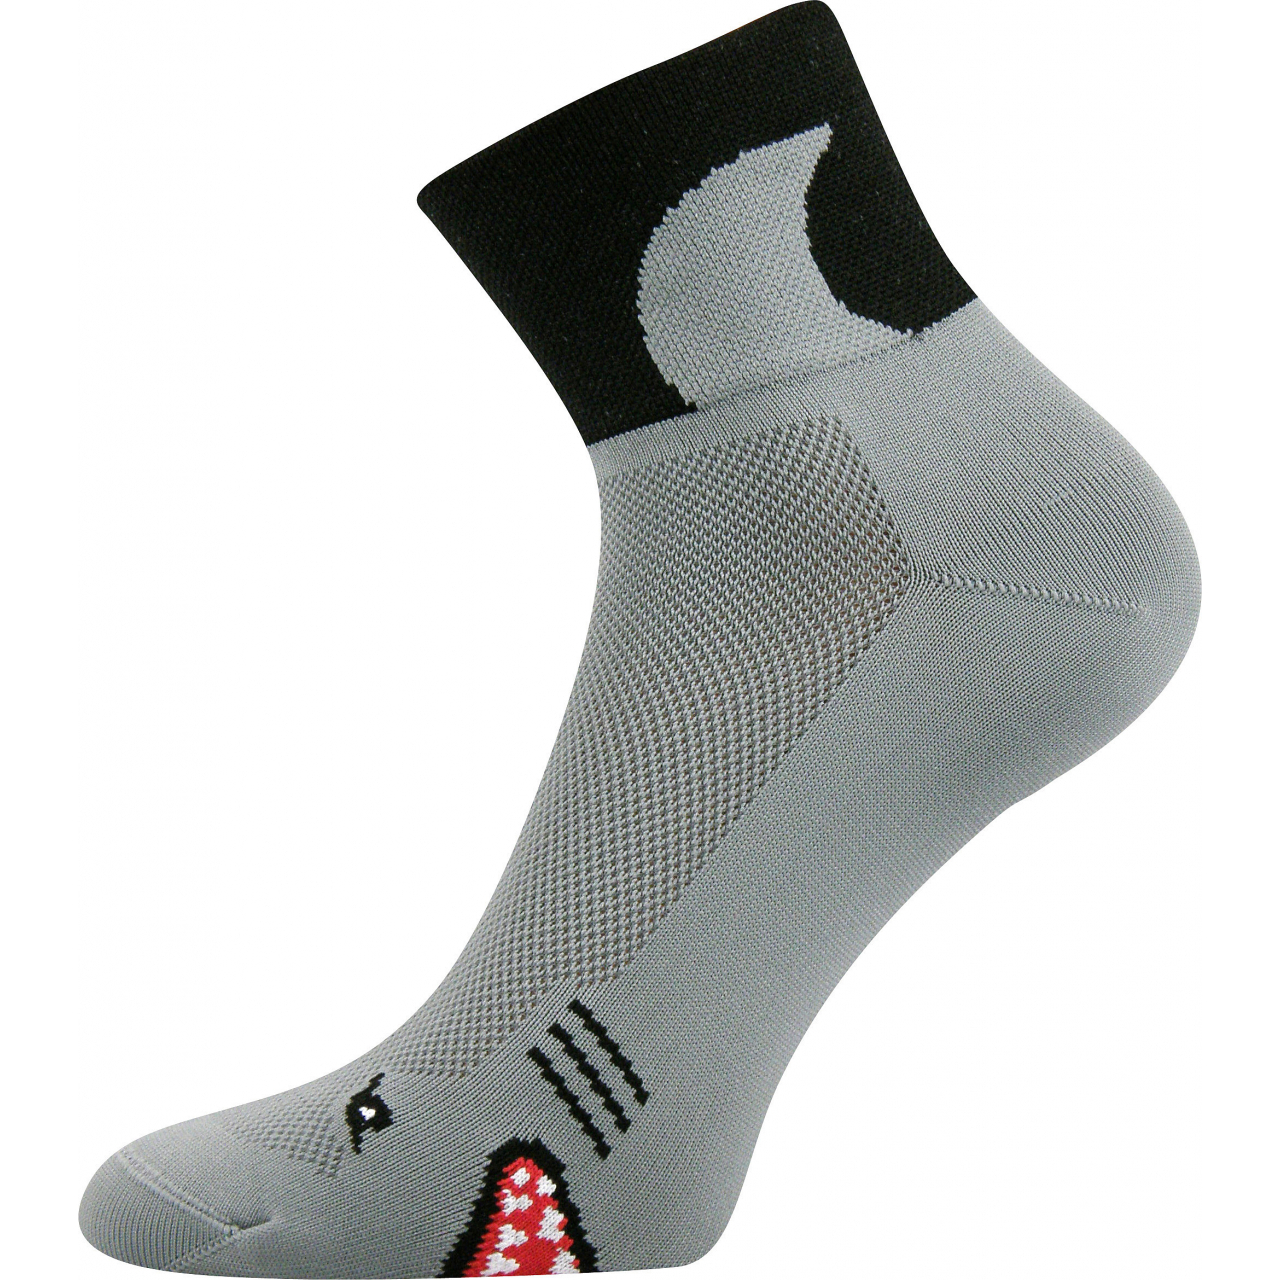 Ponožky sportovní unisex Voxx Ralf X Žraloci - šedé-černé, 43-46